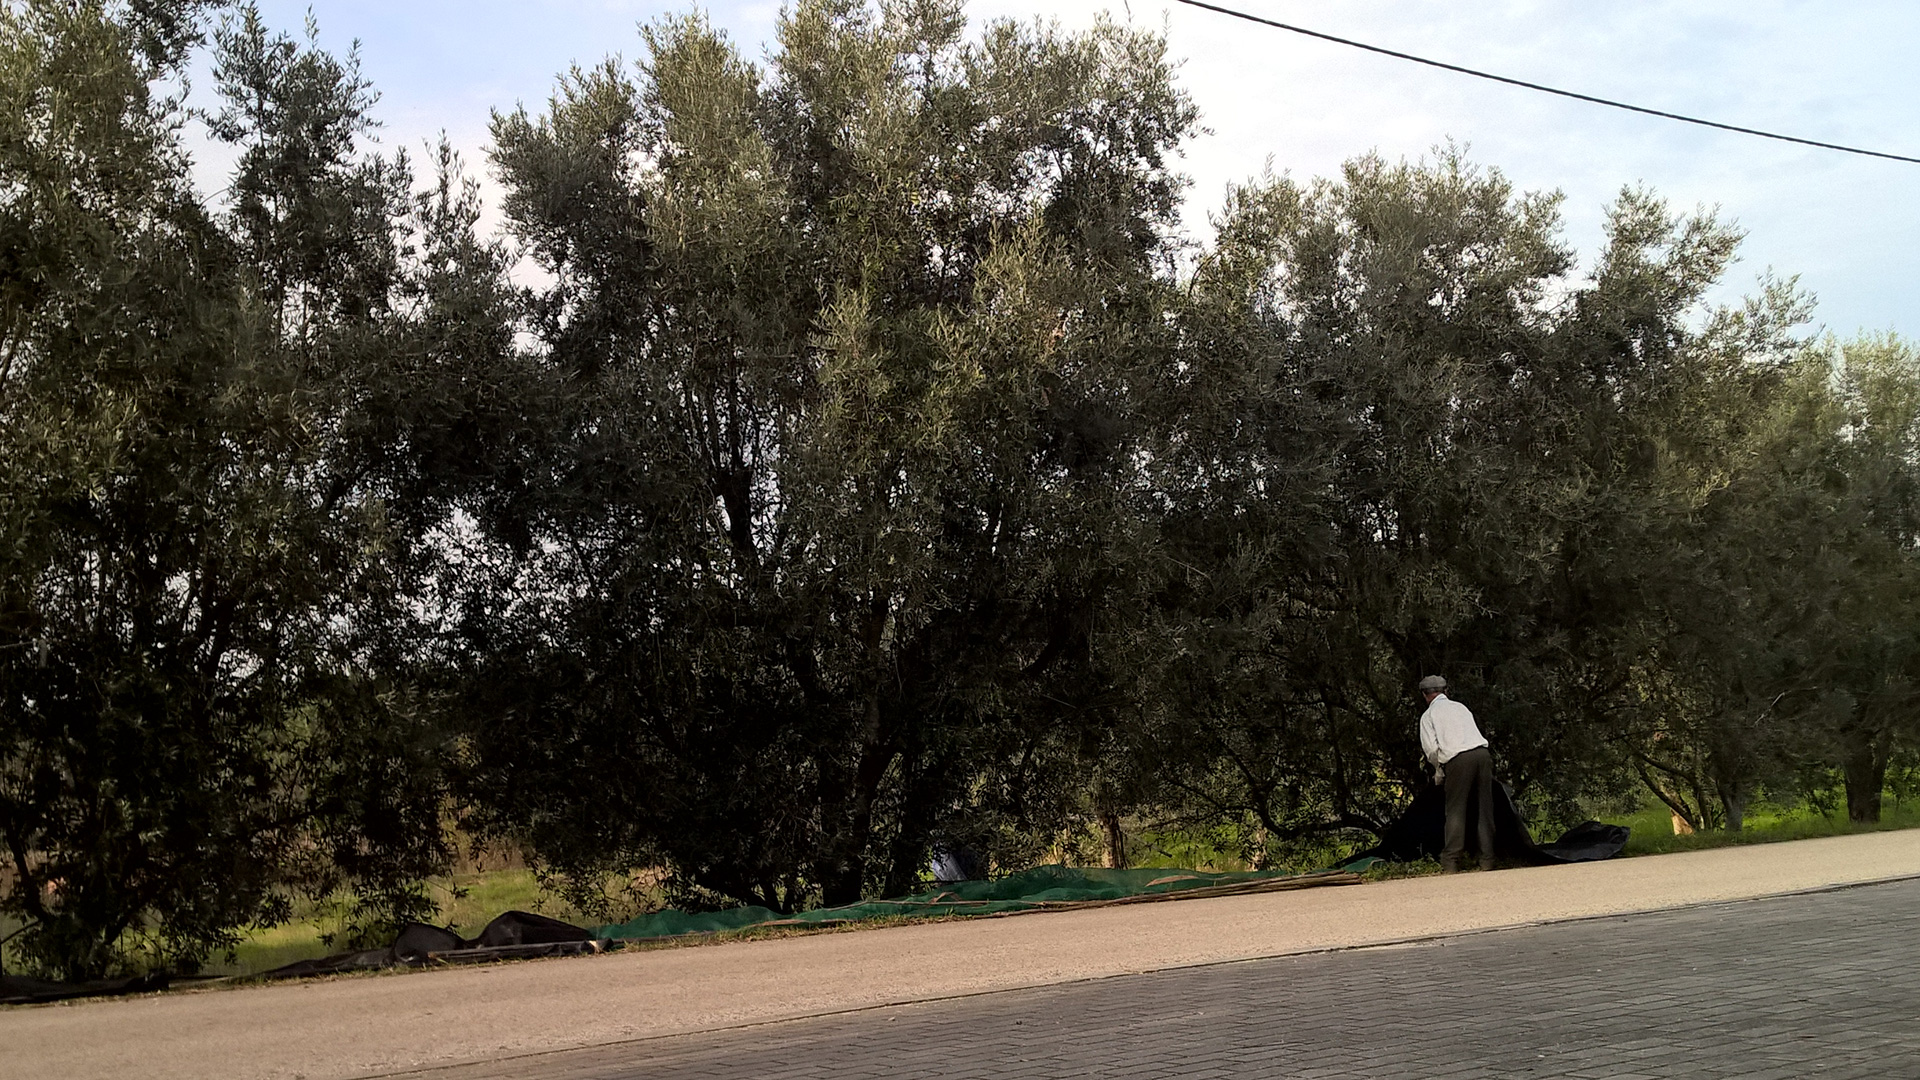 Les voisins aussi travaillent activement sur leurs oliviers.